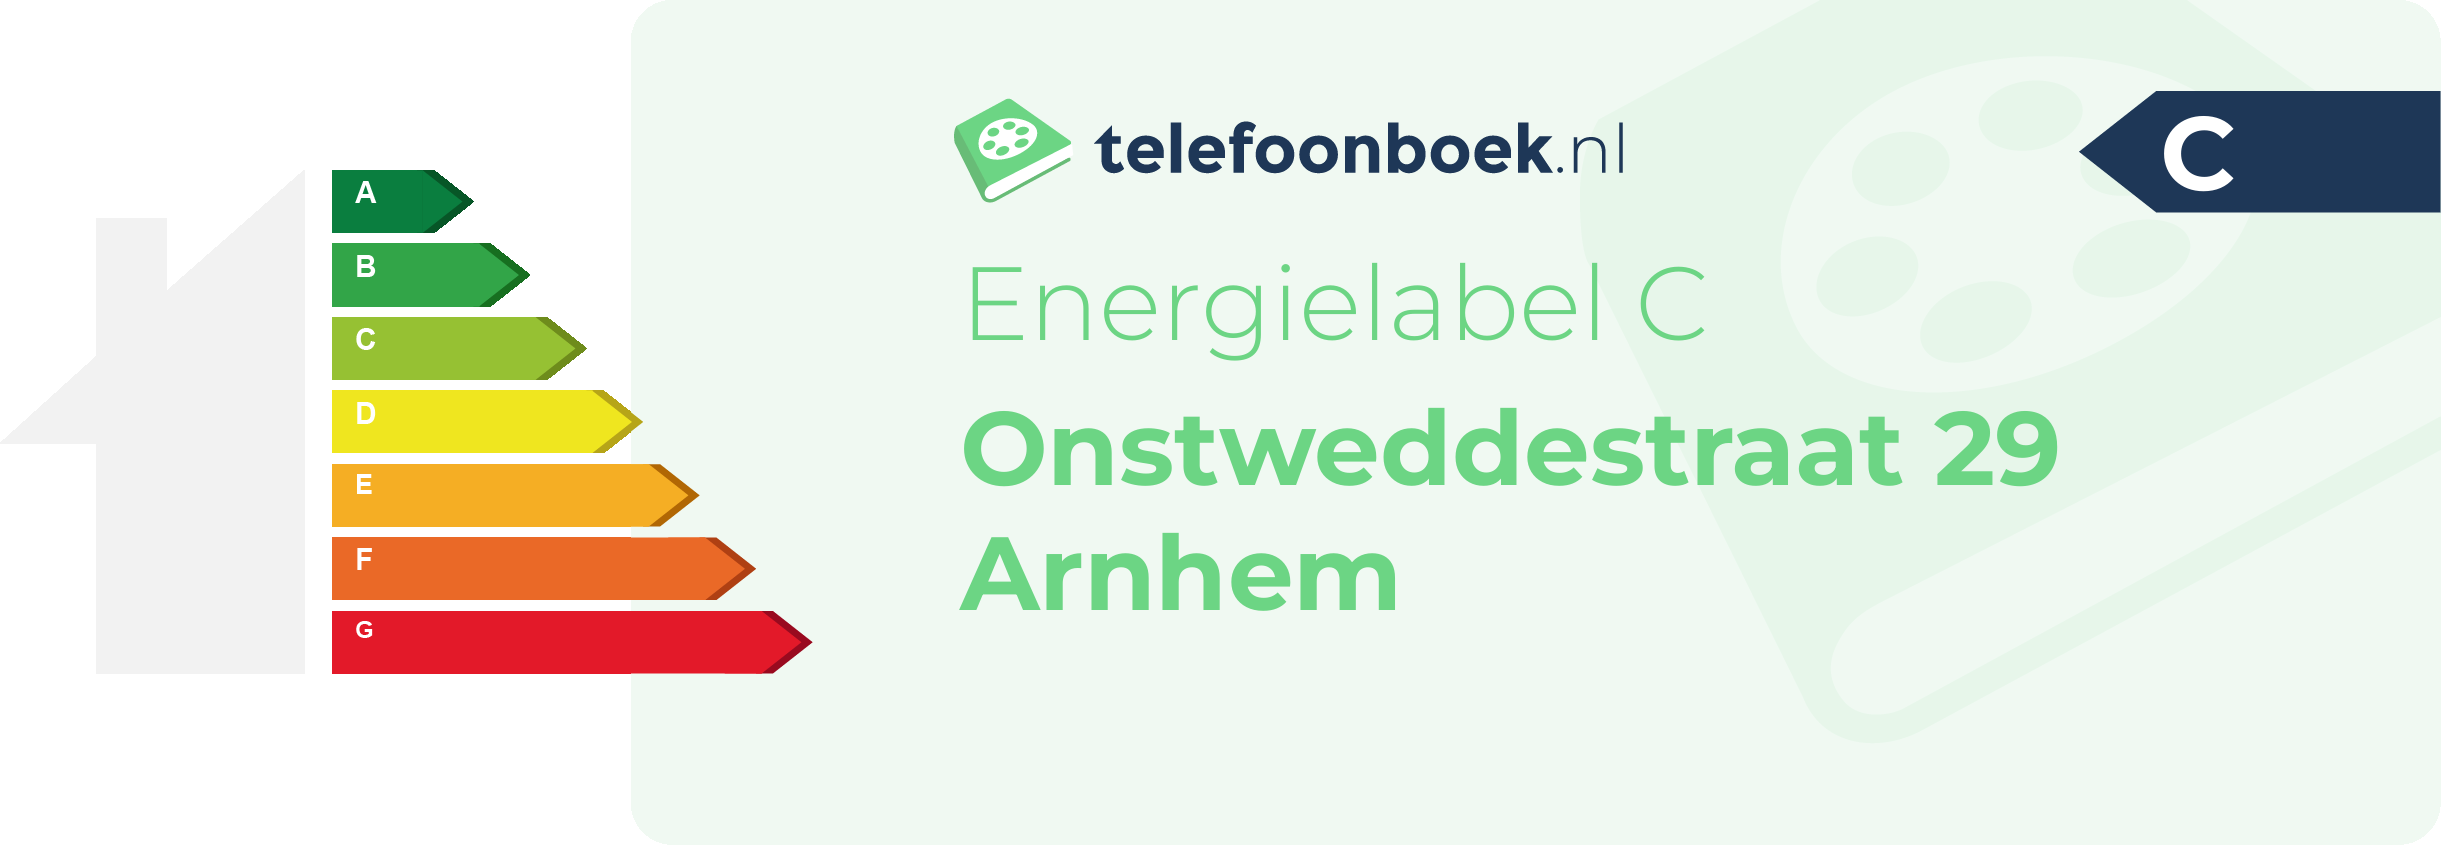 Energielabel Onstweddestraat 29 Arnhem